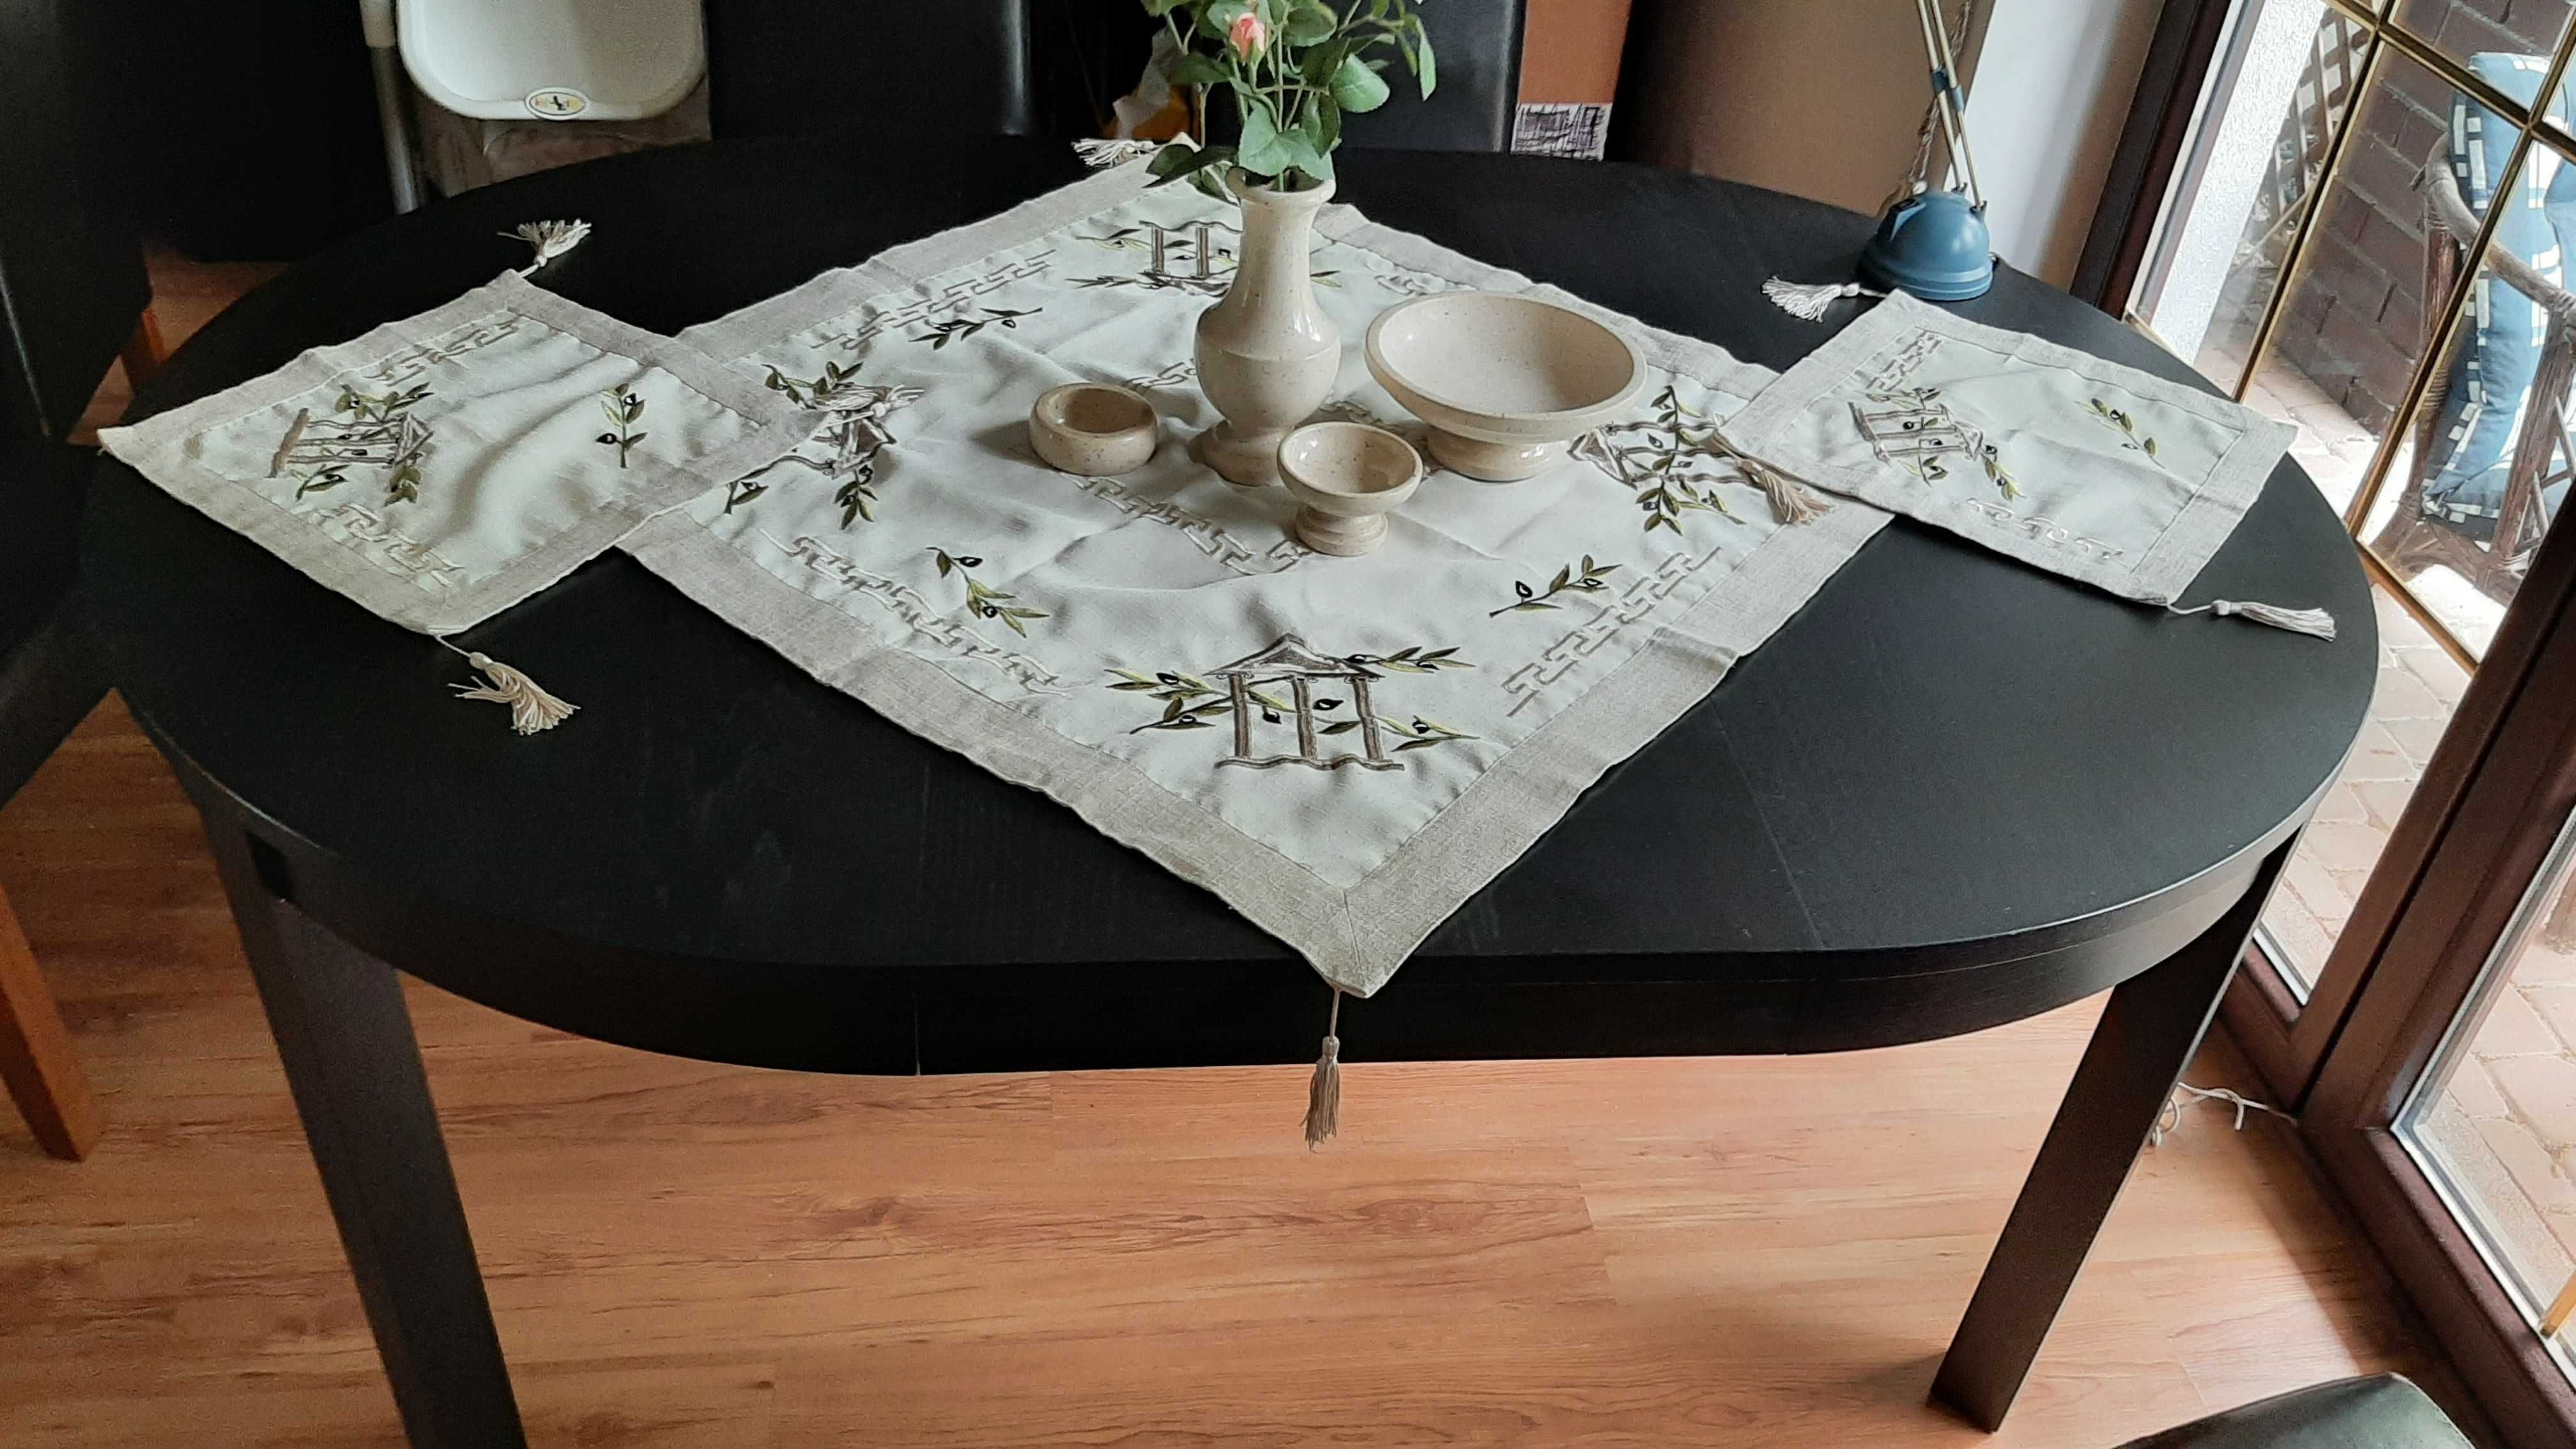 Stół okrągły, rozkładany Ikea Bjursta, czarny, używany, stan jak nowy